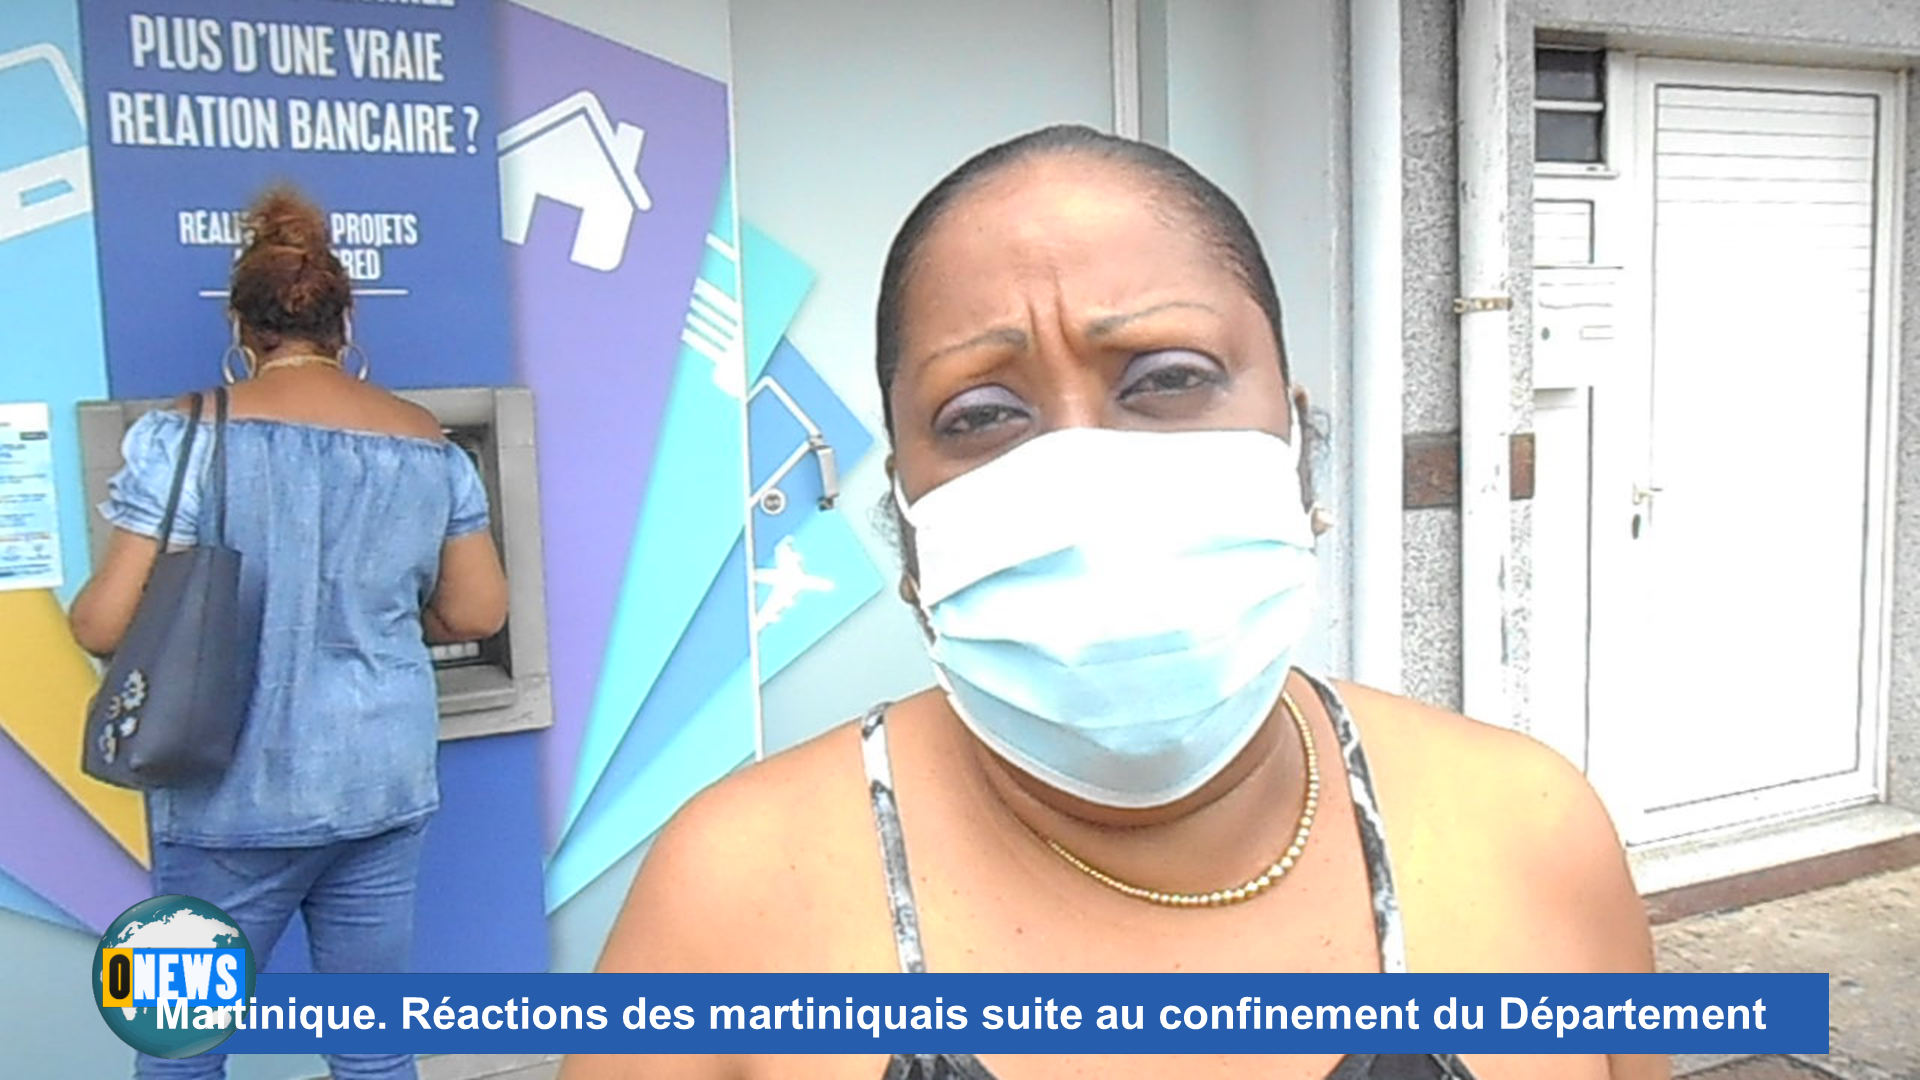 [Vidéo] Onews Martinique. Réactions des martiniquais suite au confinement du Département